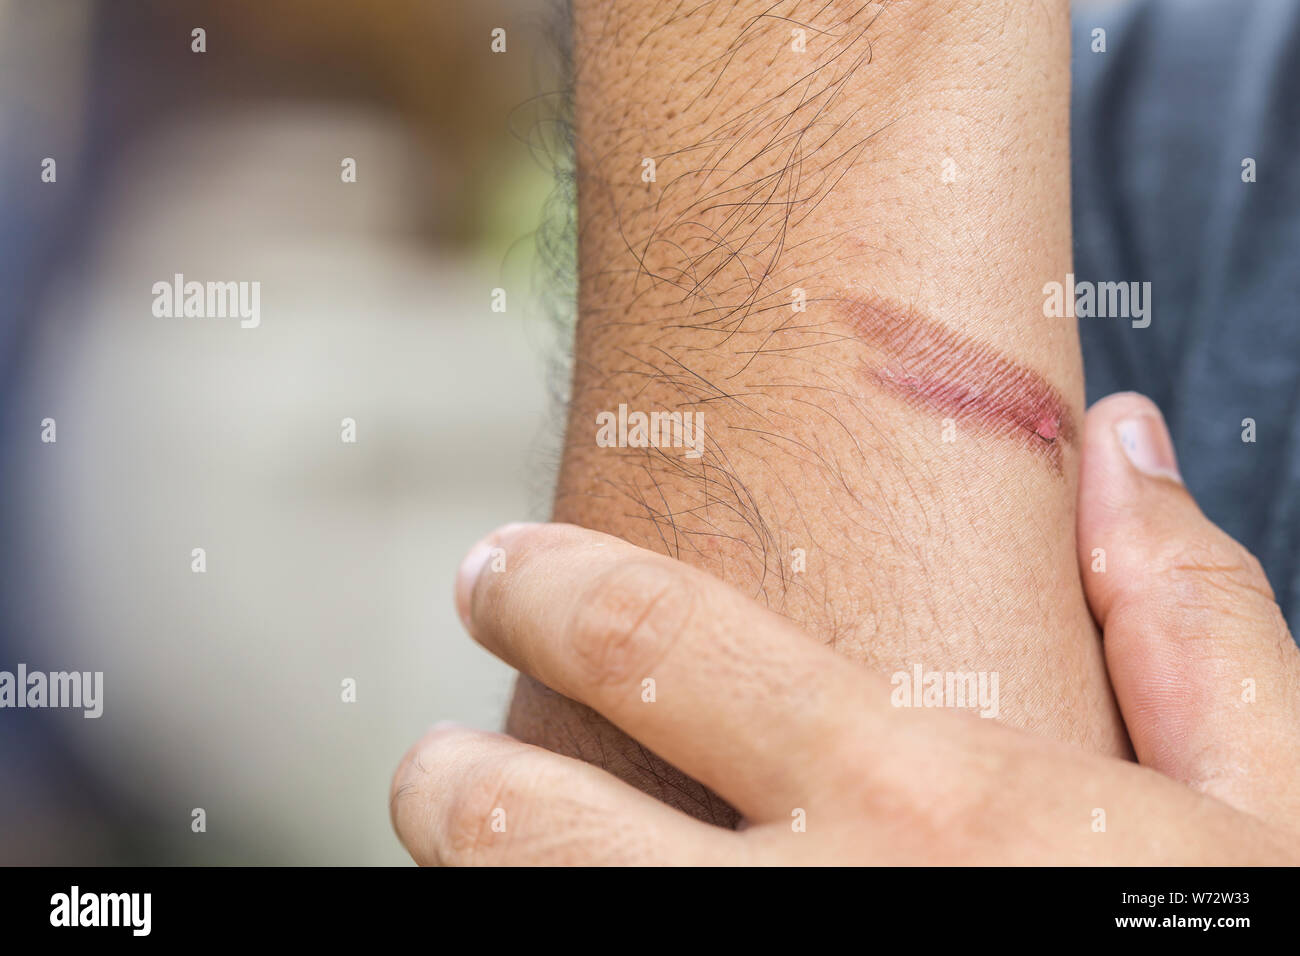 Nahaufnahme, brennende Haut am Arm, Verletzungen durch Feuer Stockfoto